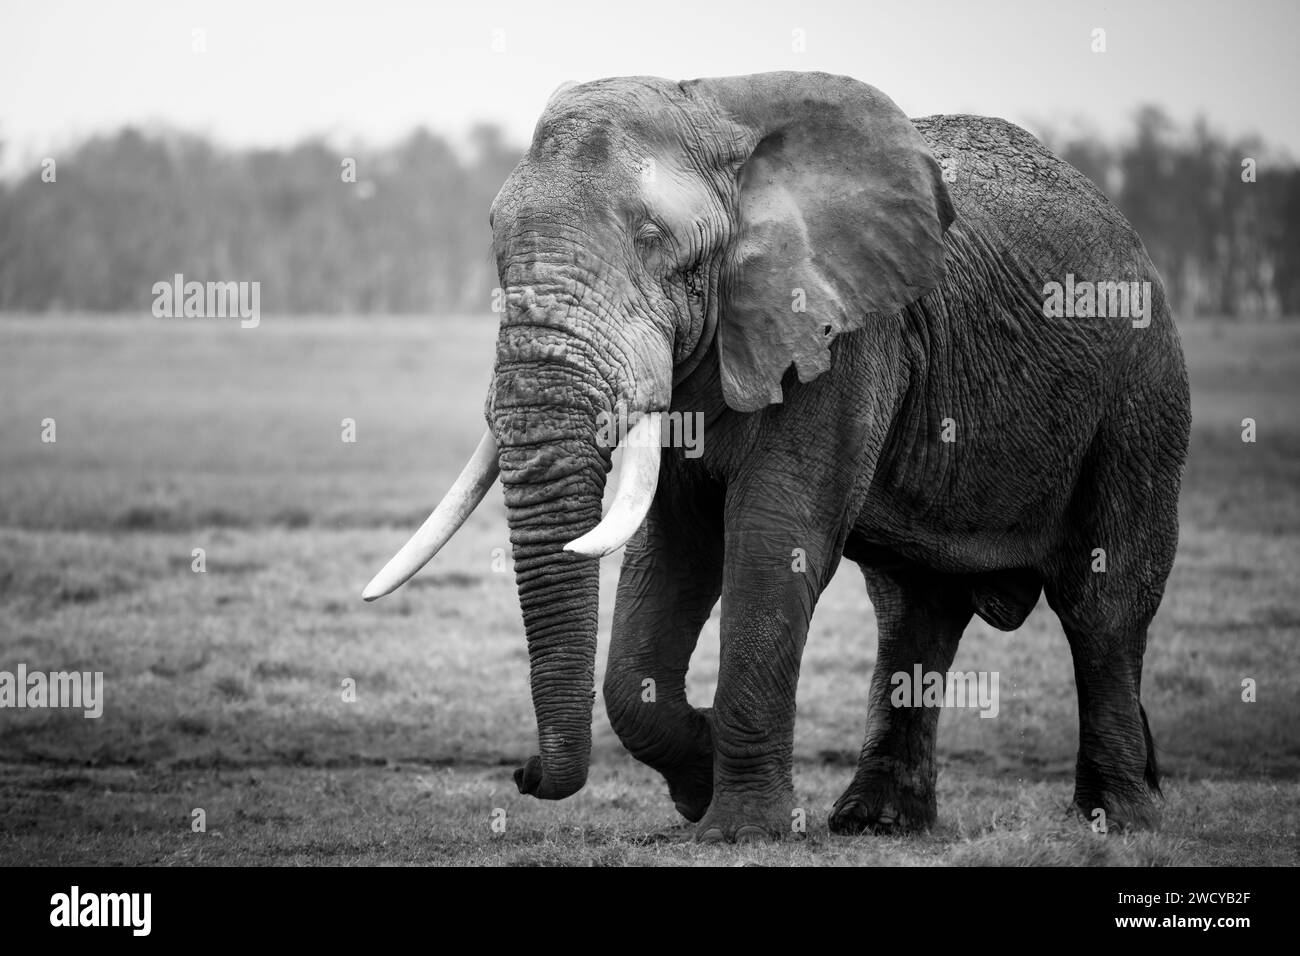 Portrait en noir et blanc d'un éléphant marchant dans la savane kénienne Banque D'Images